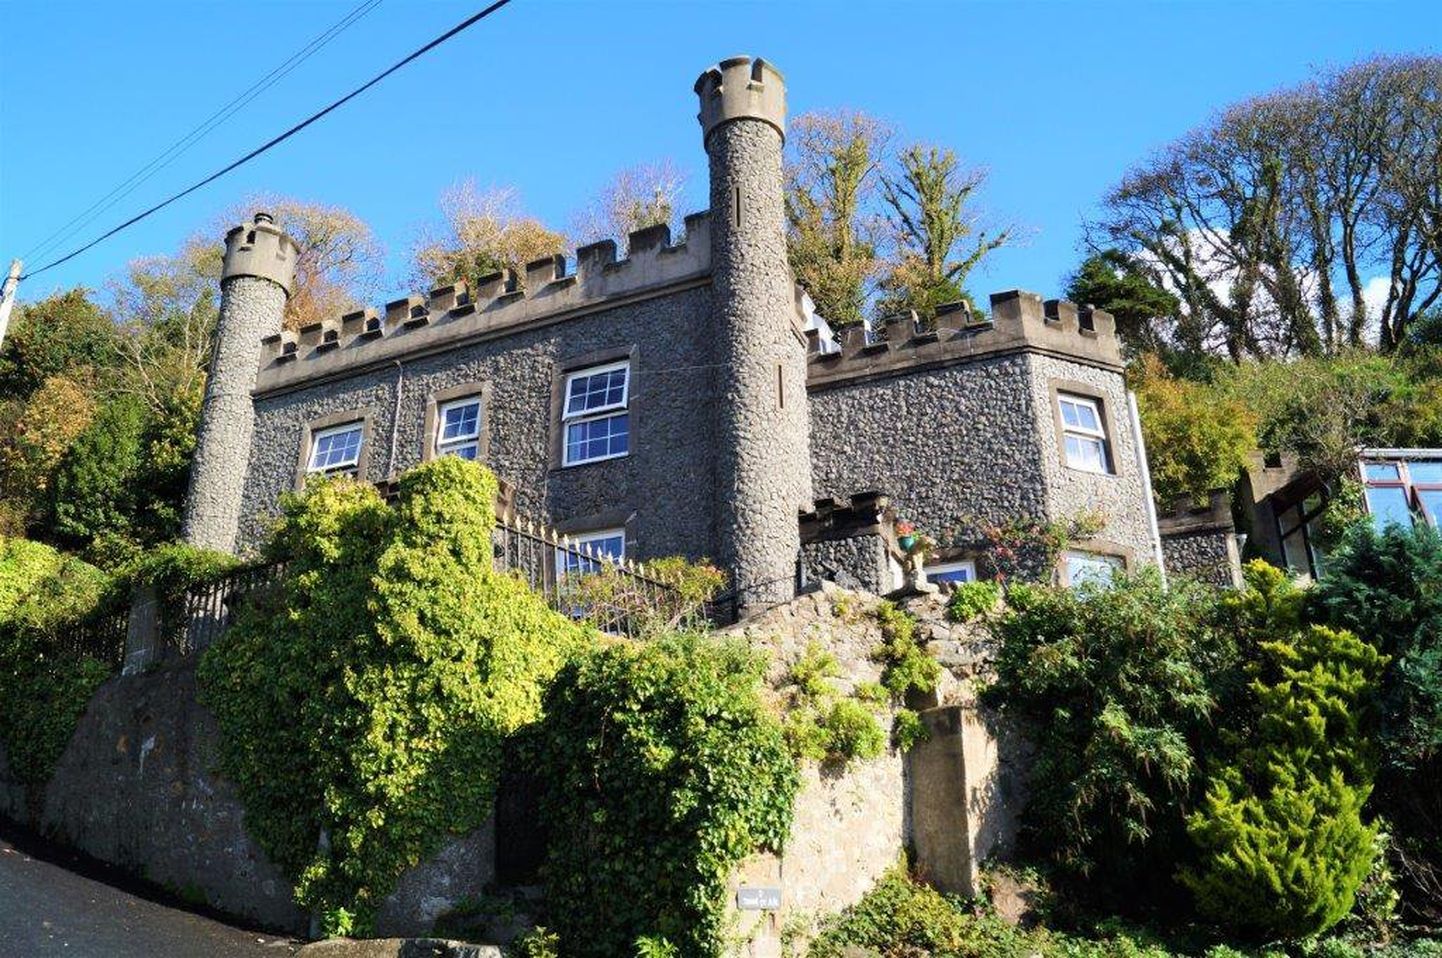 Inglismaal on müüa pilkupüüdev ajalooline loss.